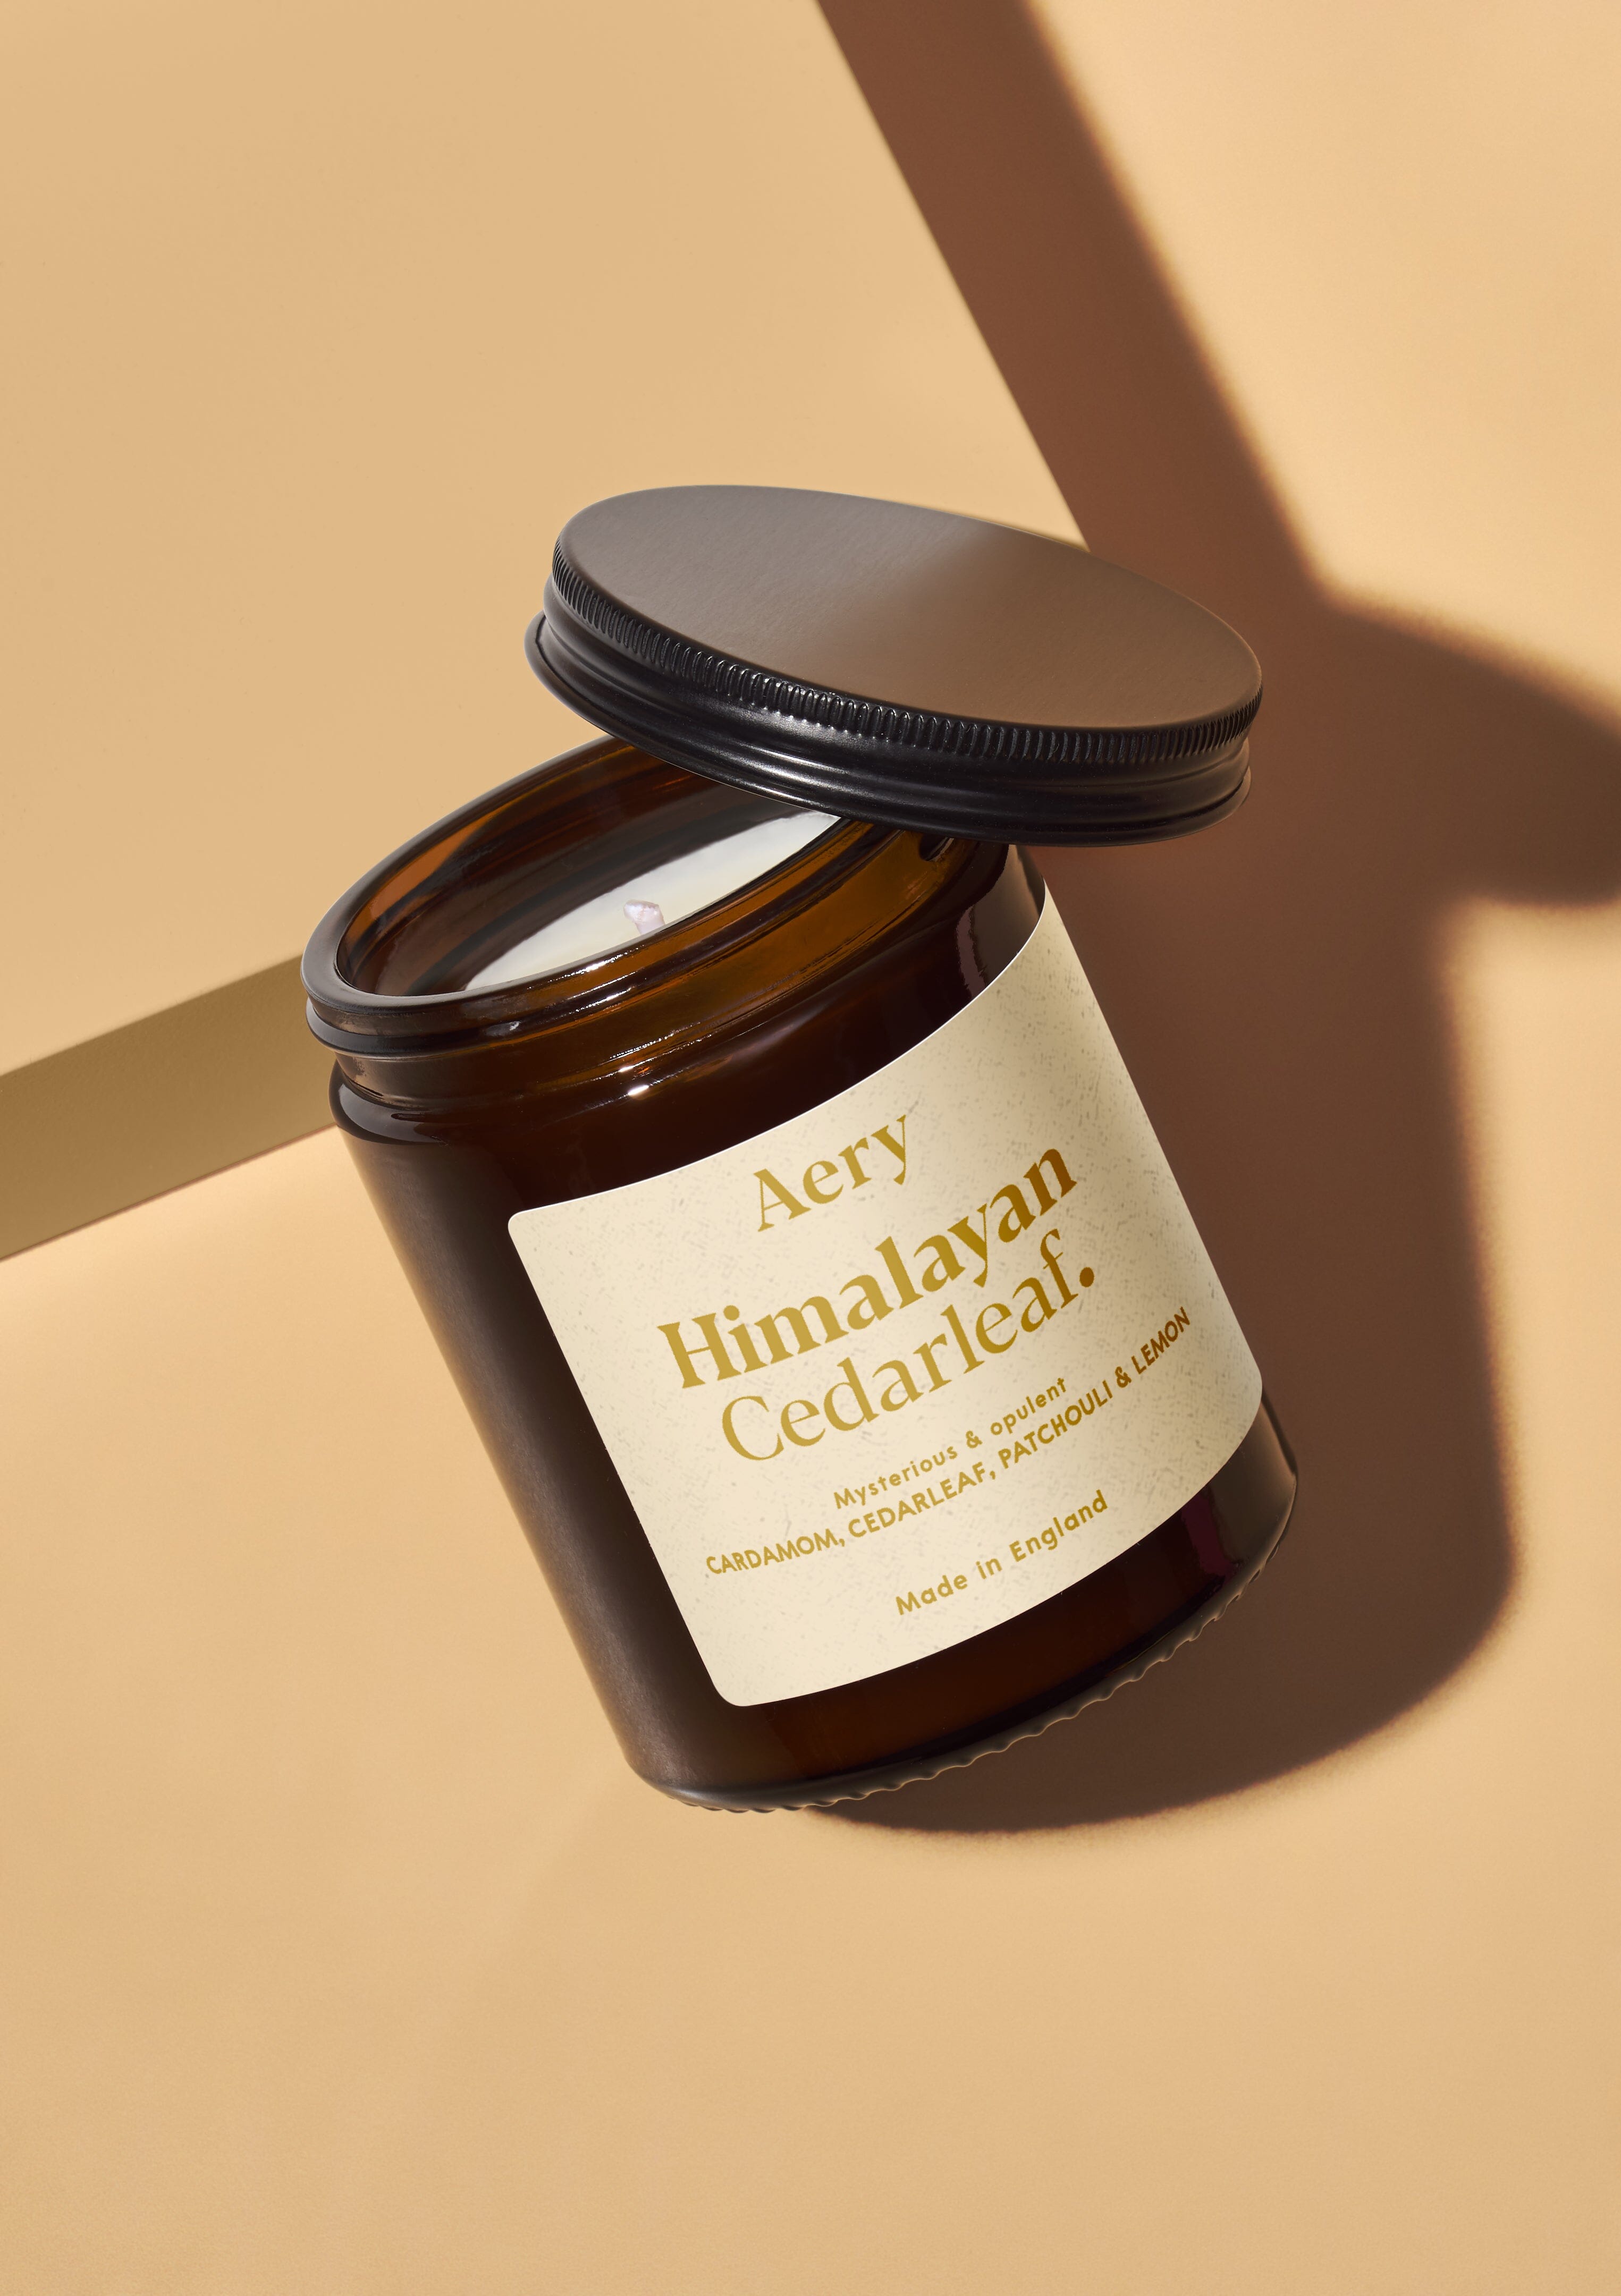 Himalayan Cedarleaf Scented Jar Candle - Cedar Patchouli and Lemon